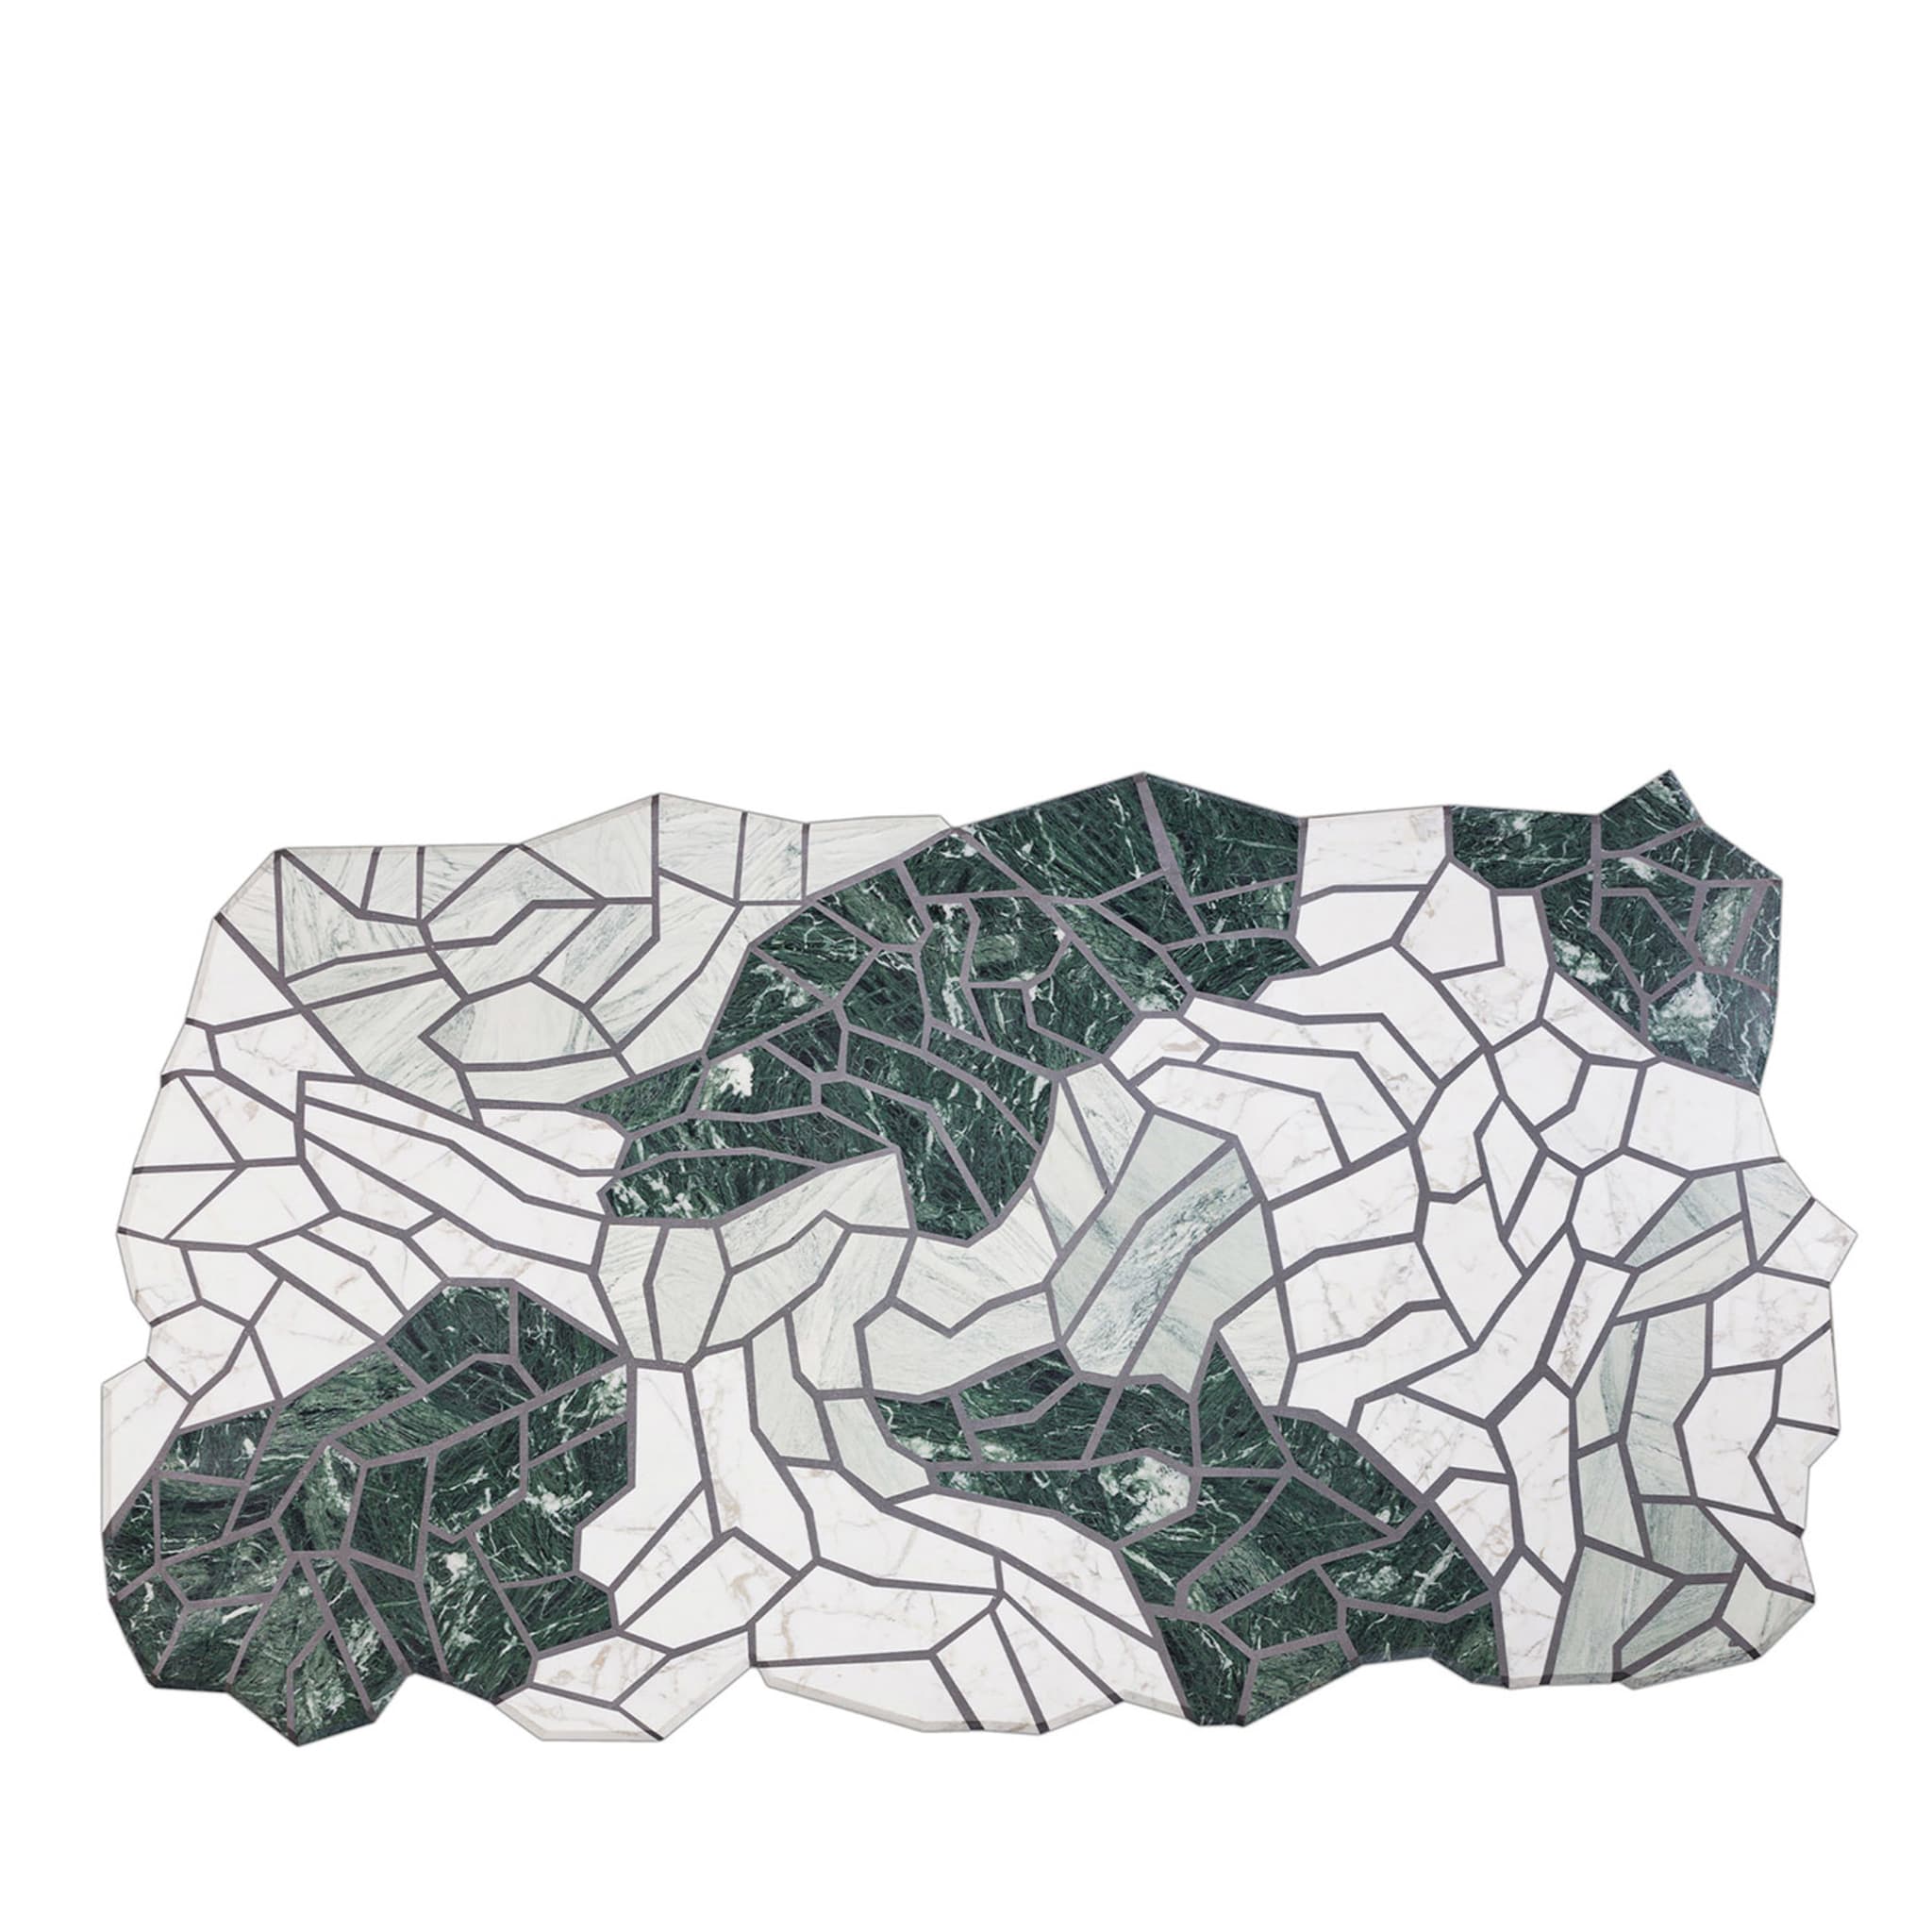 Vague Asymmetrischer Marmorteppich von Zanellato-Bortotto Studio - Hauptansicht